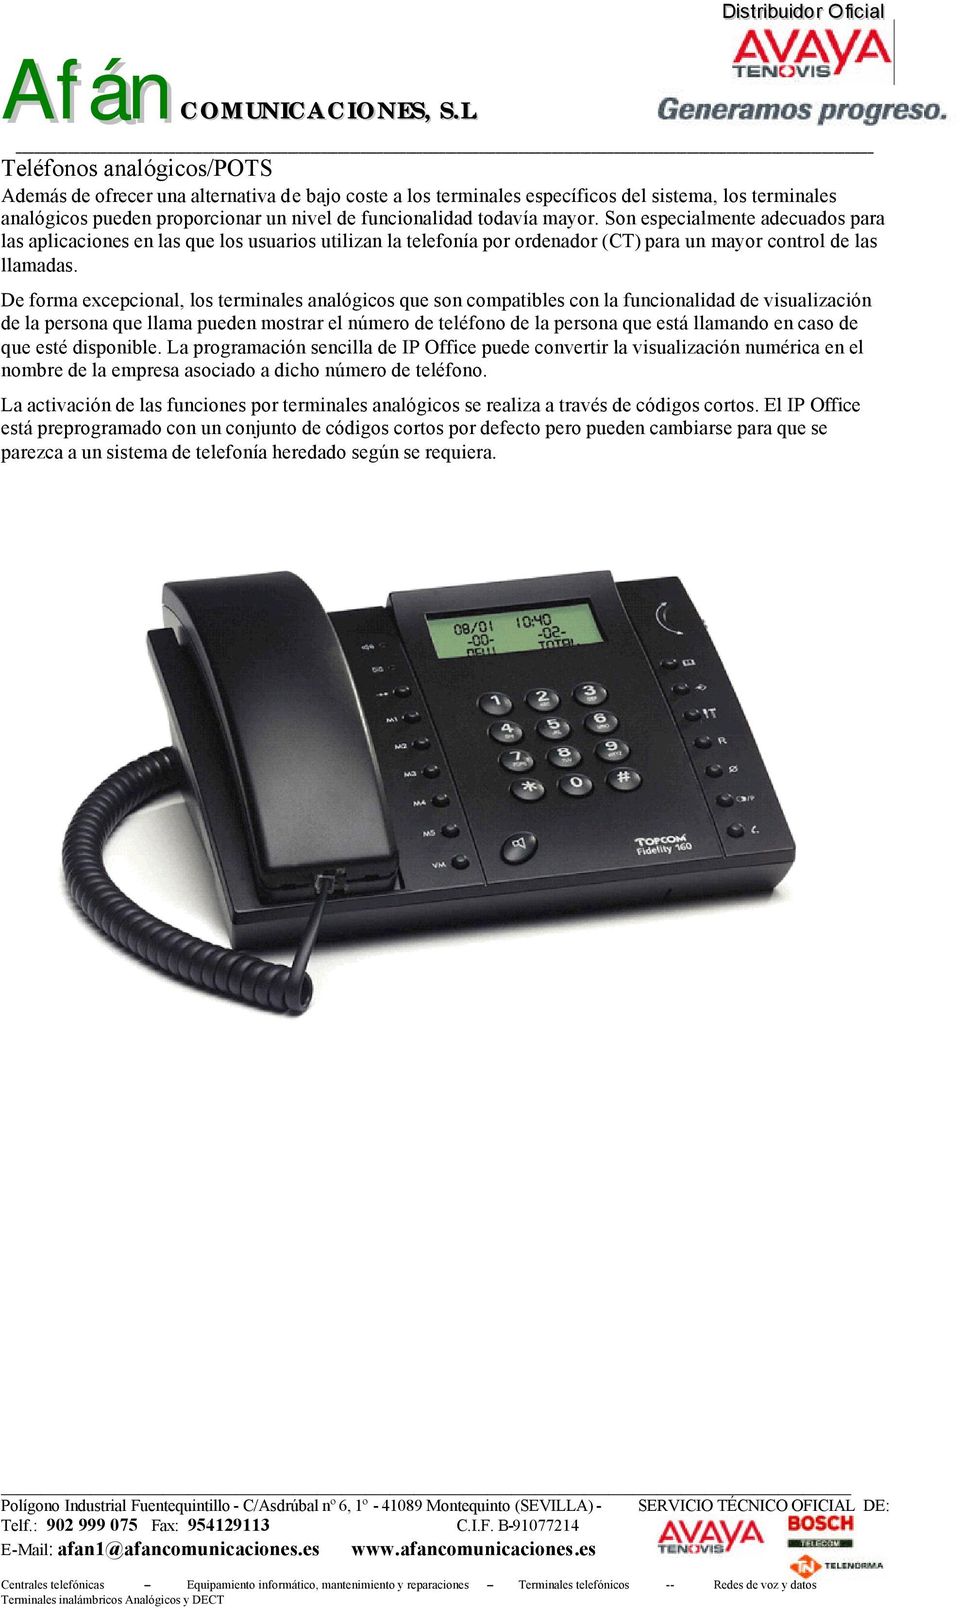 De forma excepcional, los terminales analógicos que son compatibles con la funcionalidad de visualización de la persona que llama pueden mostrar el número de teléfono de la persona que está llamando